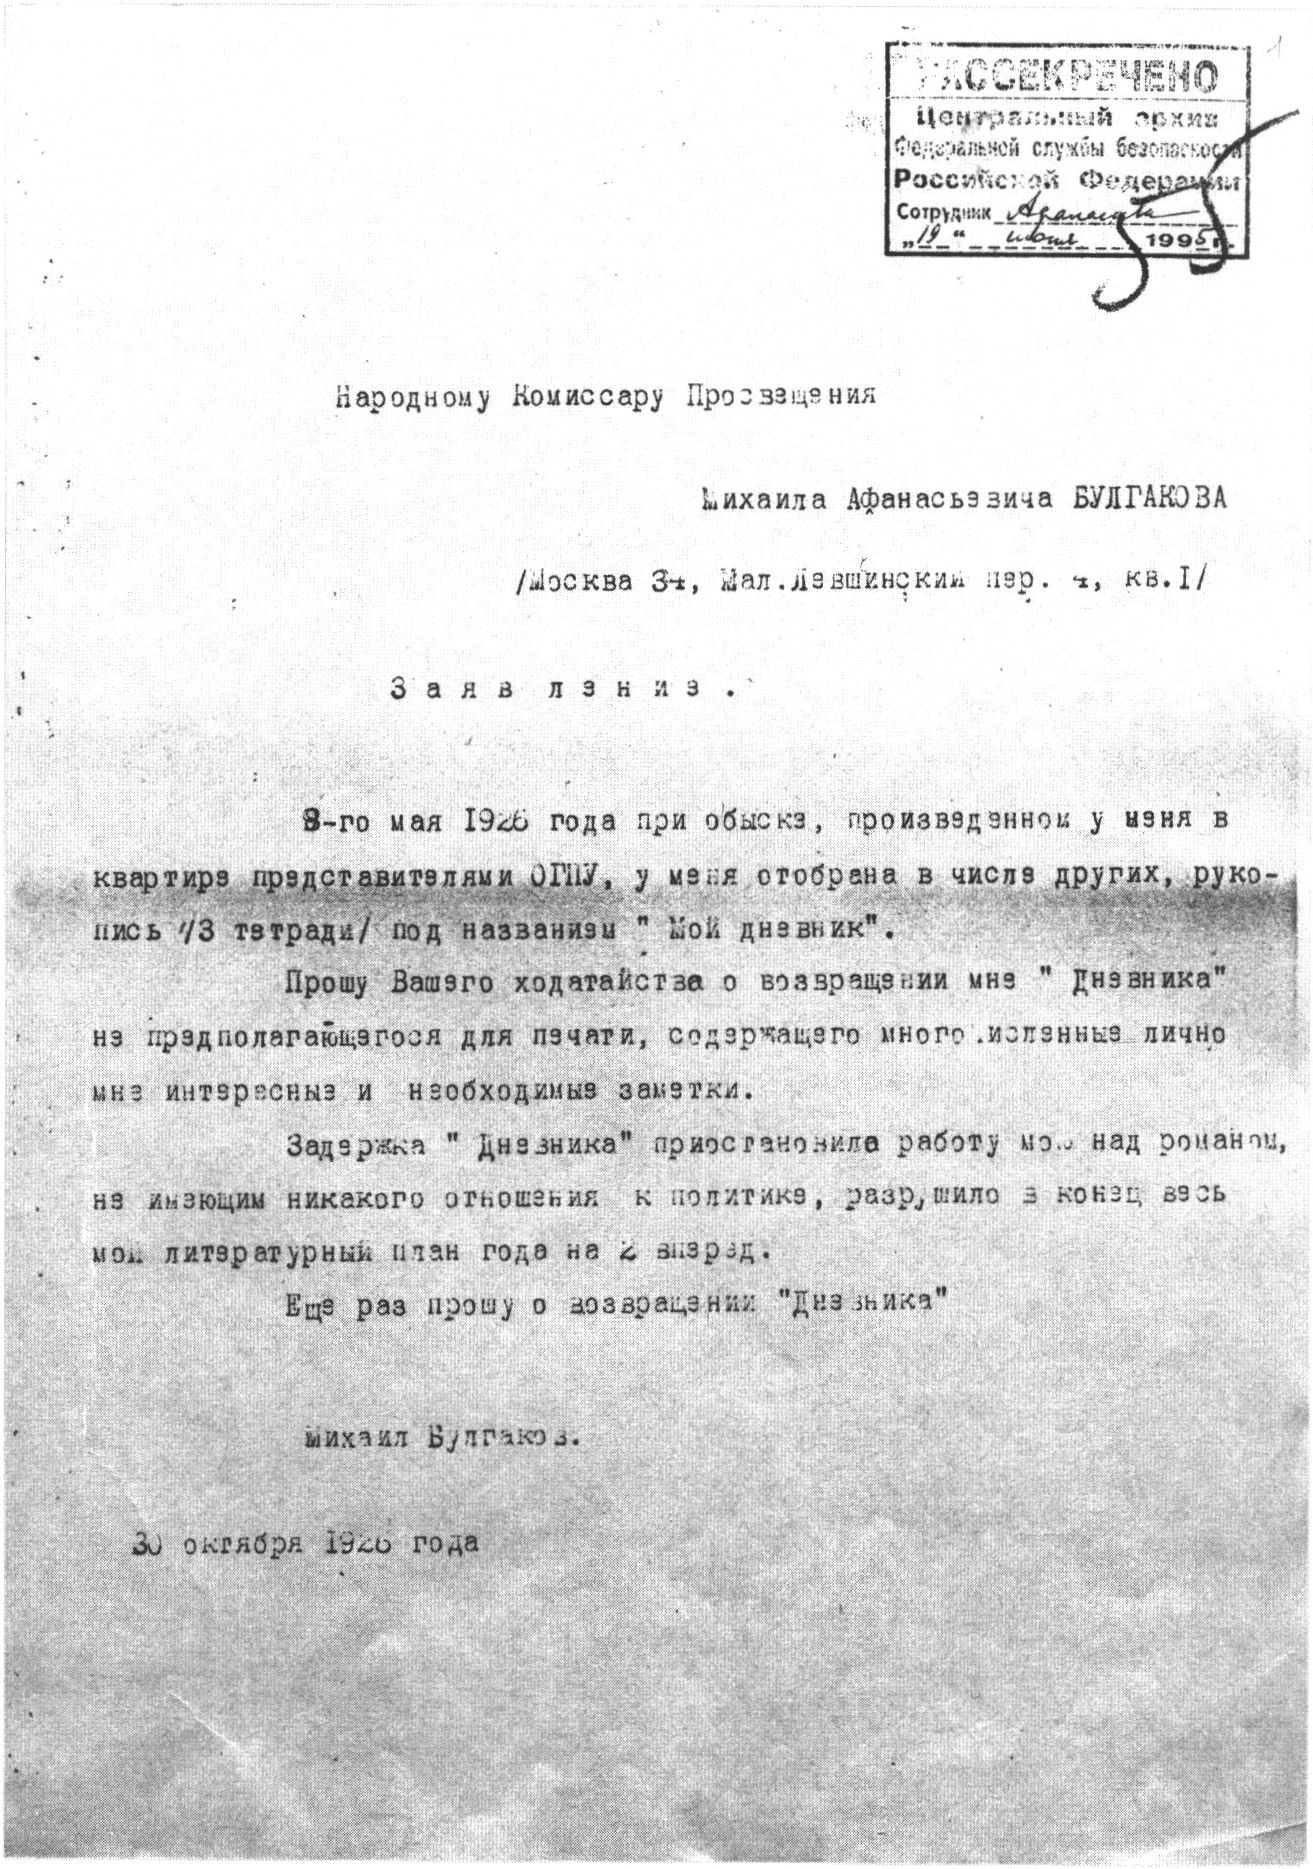 Заявление Булгакова в Наркомпрос с просьбой о ходатайстве в возвращении ему дневника. 30 октября 1926 г.